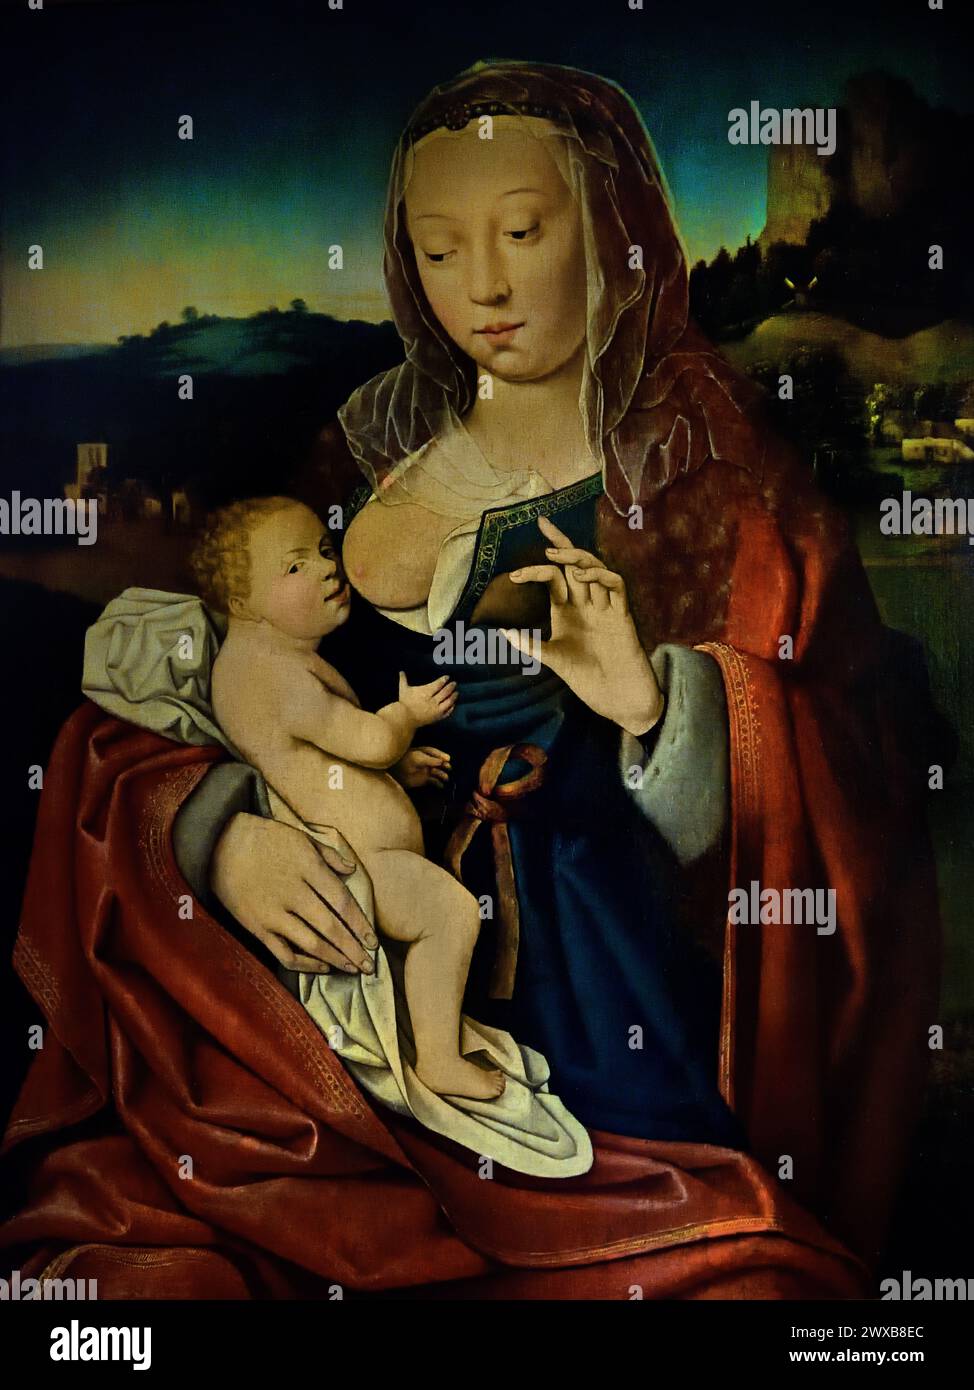 Maria Lactans con pera del Maestro di Francoforte 1500 - 1524 Museo Mayer van den Bergh, Anversa, Belgio, Belgio. Foto Stock